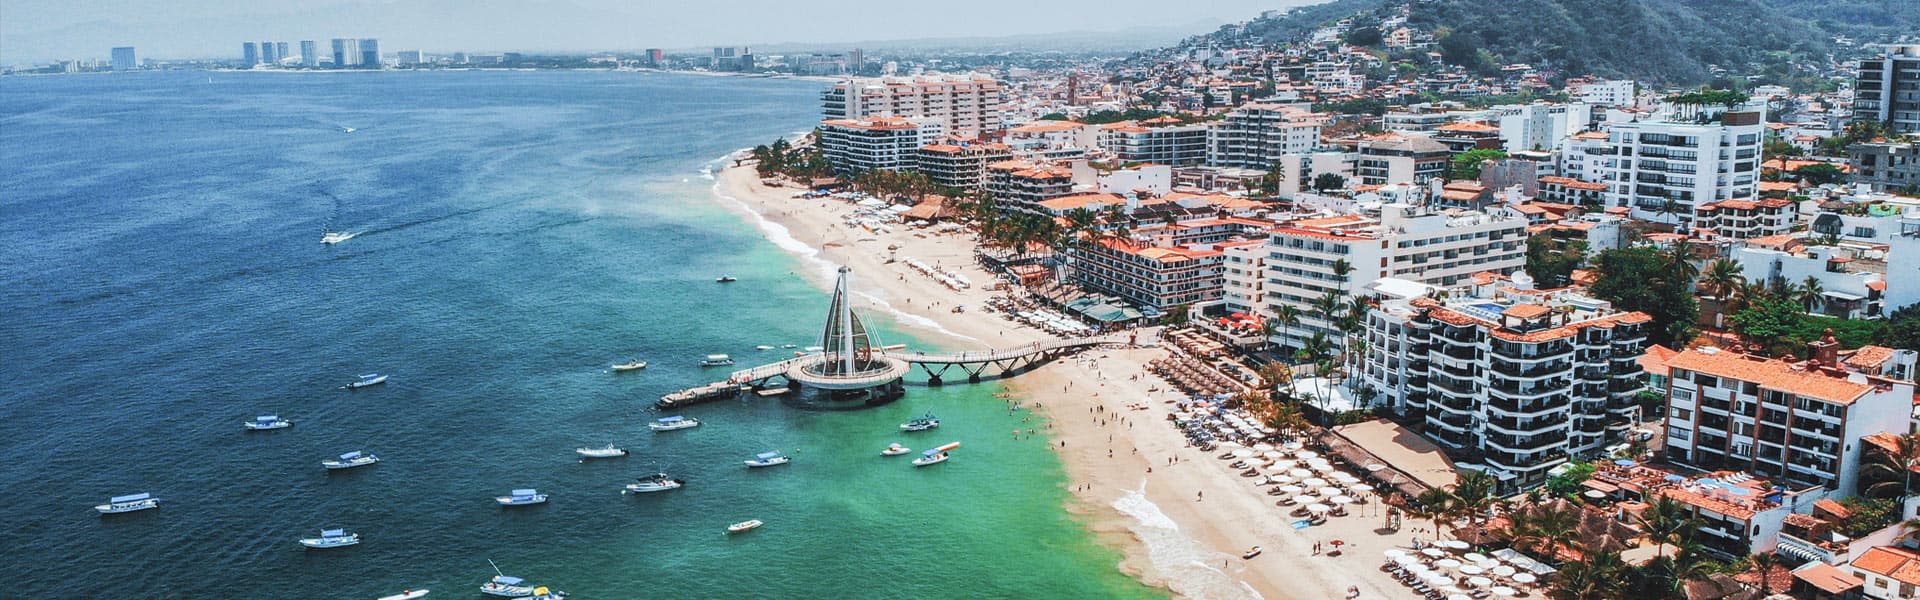 Mexican Riviera: Cabo & Puerto Vallarta